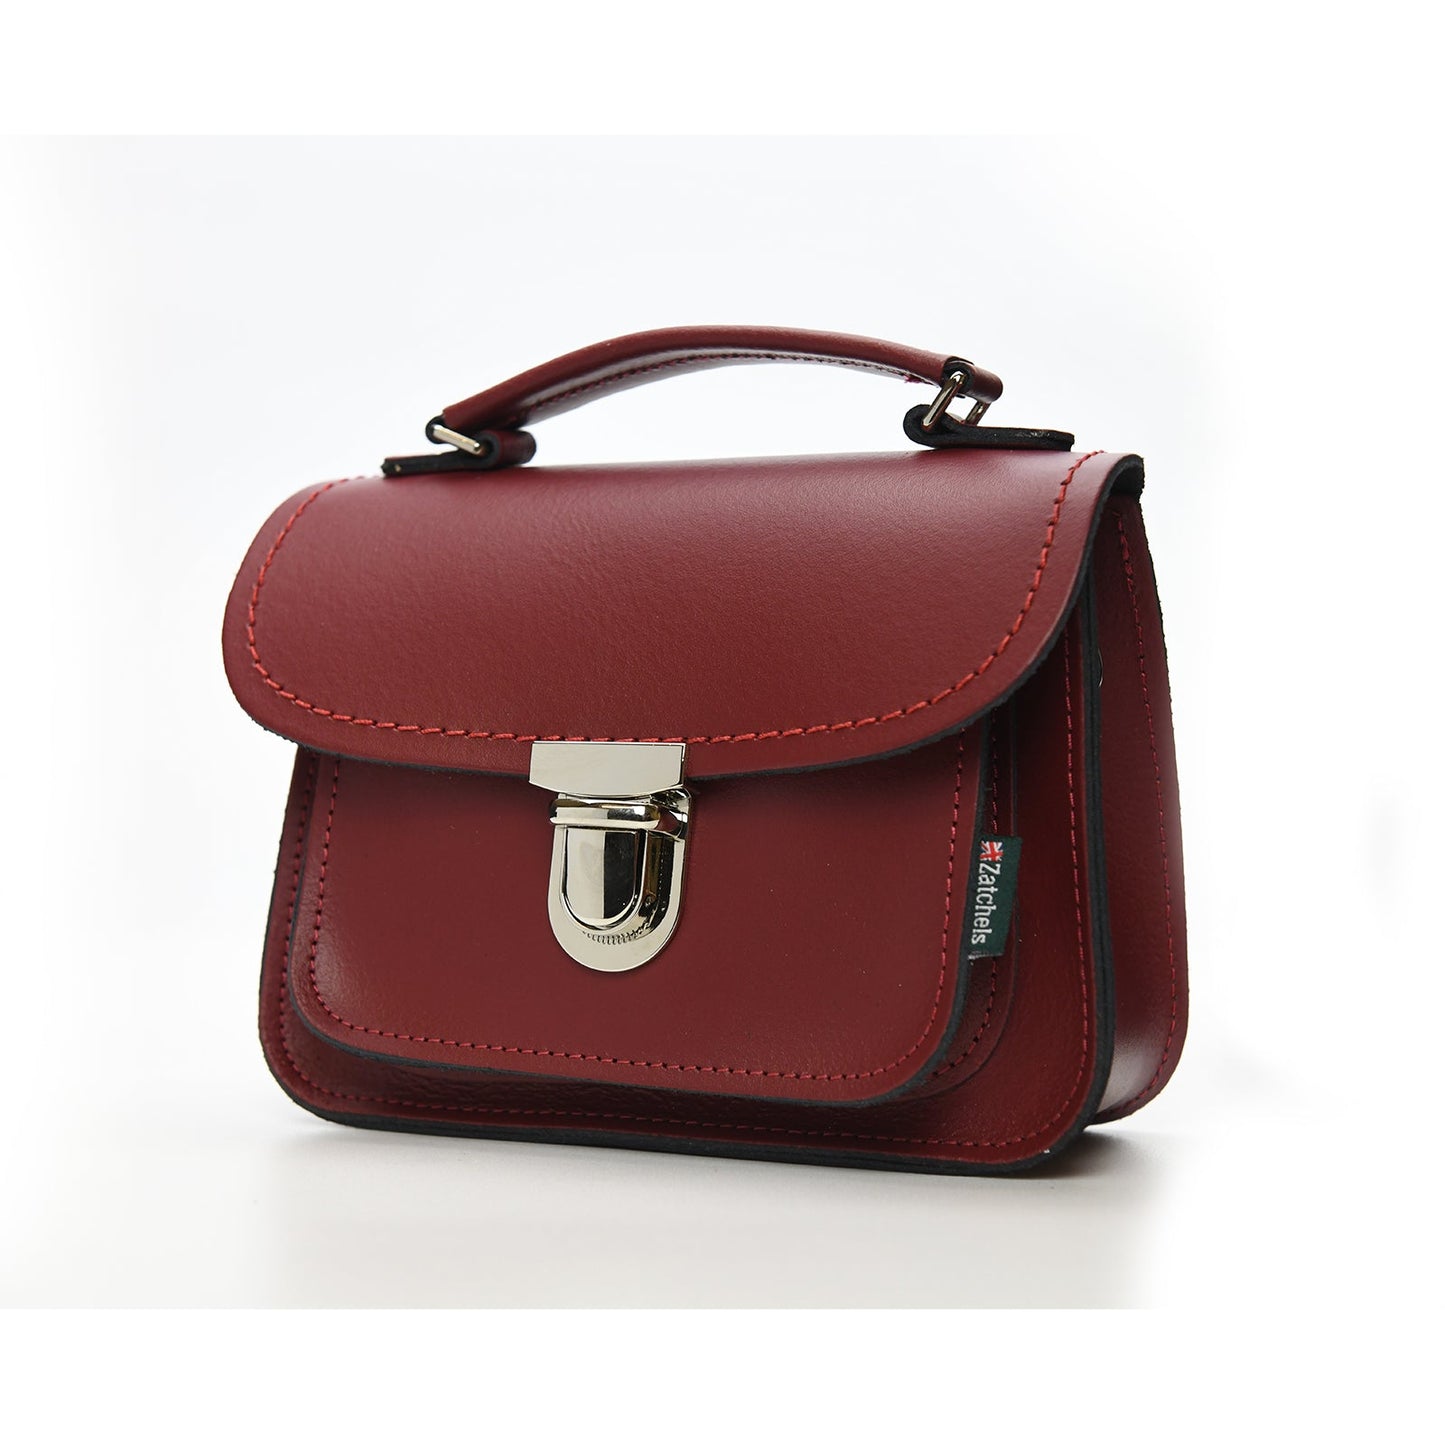 Luna Handmade Leather Bag - Oxblood Red-1